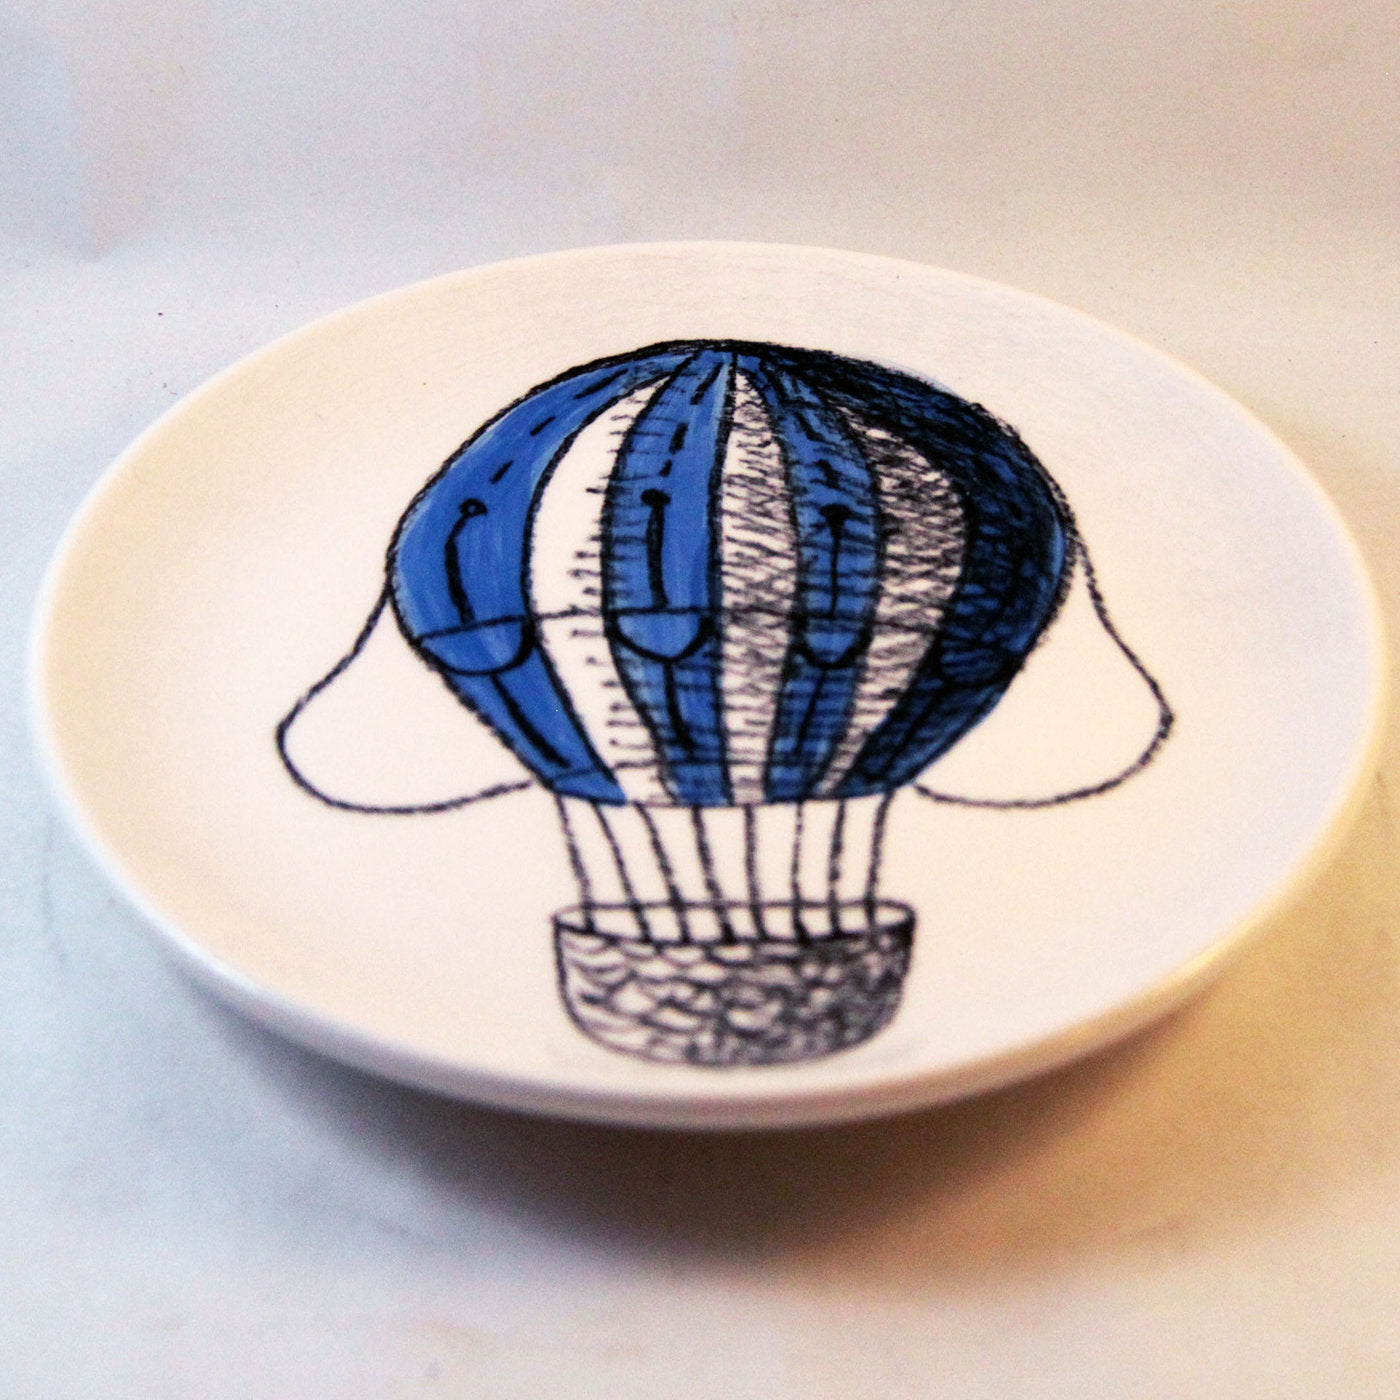 Blue Air Balloon Decorative Plate - Alternative view 1